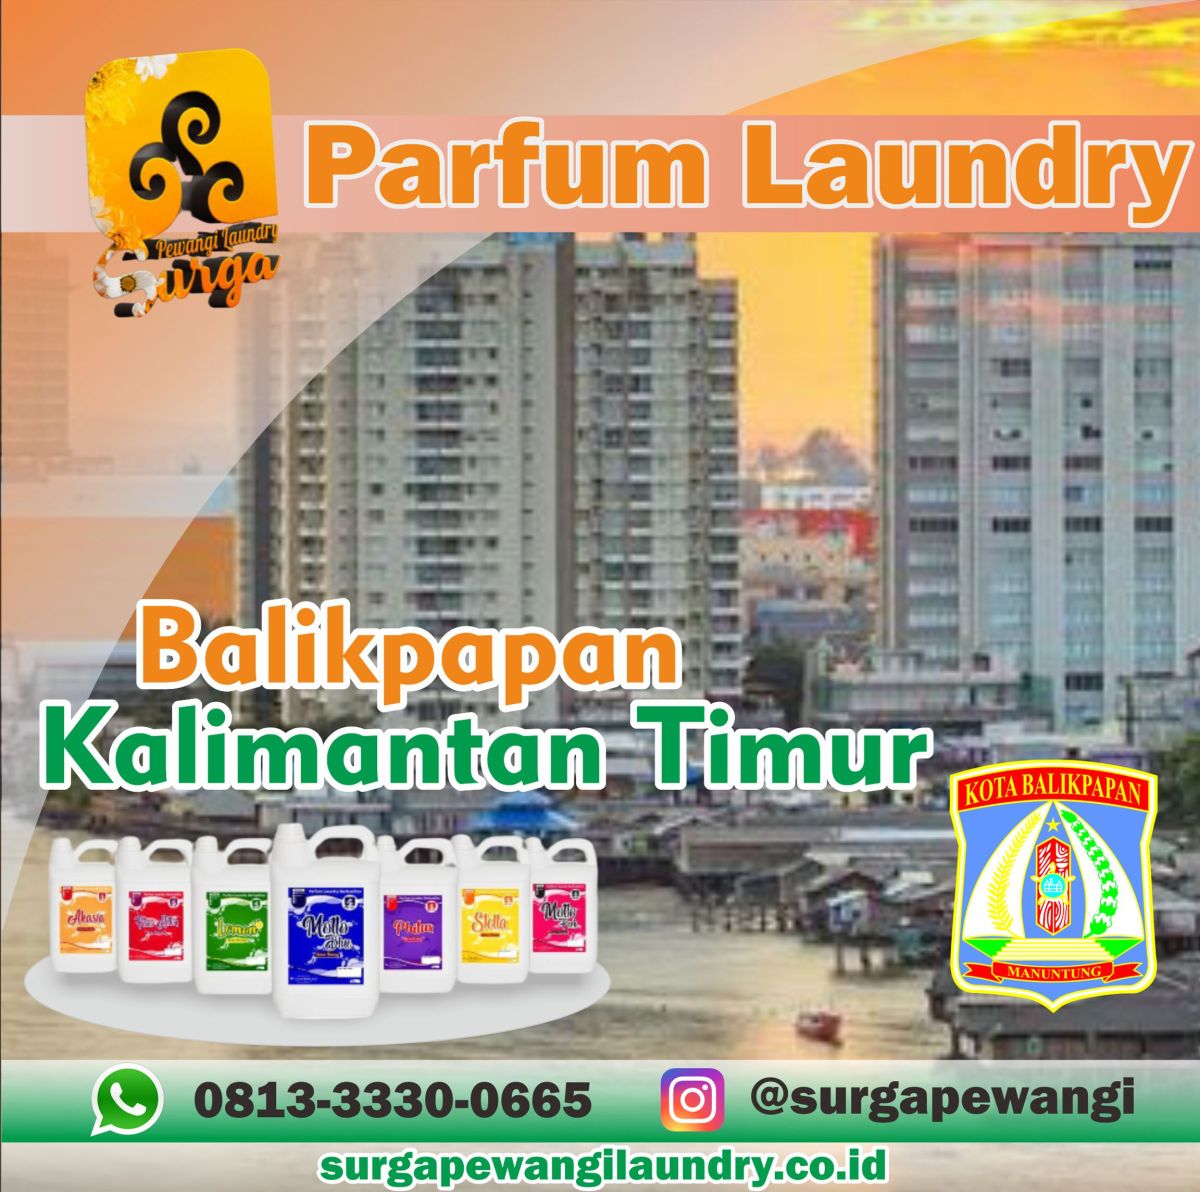 Parfum Laundry Kota Balikpapan, Kalimantan Timur